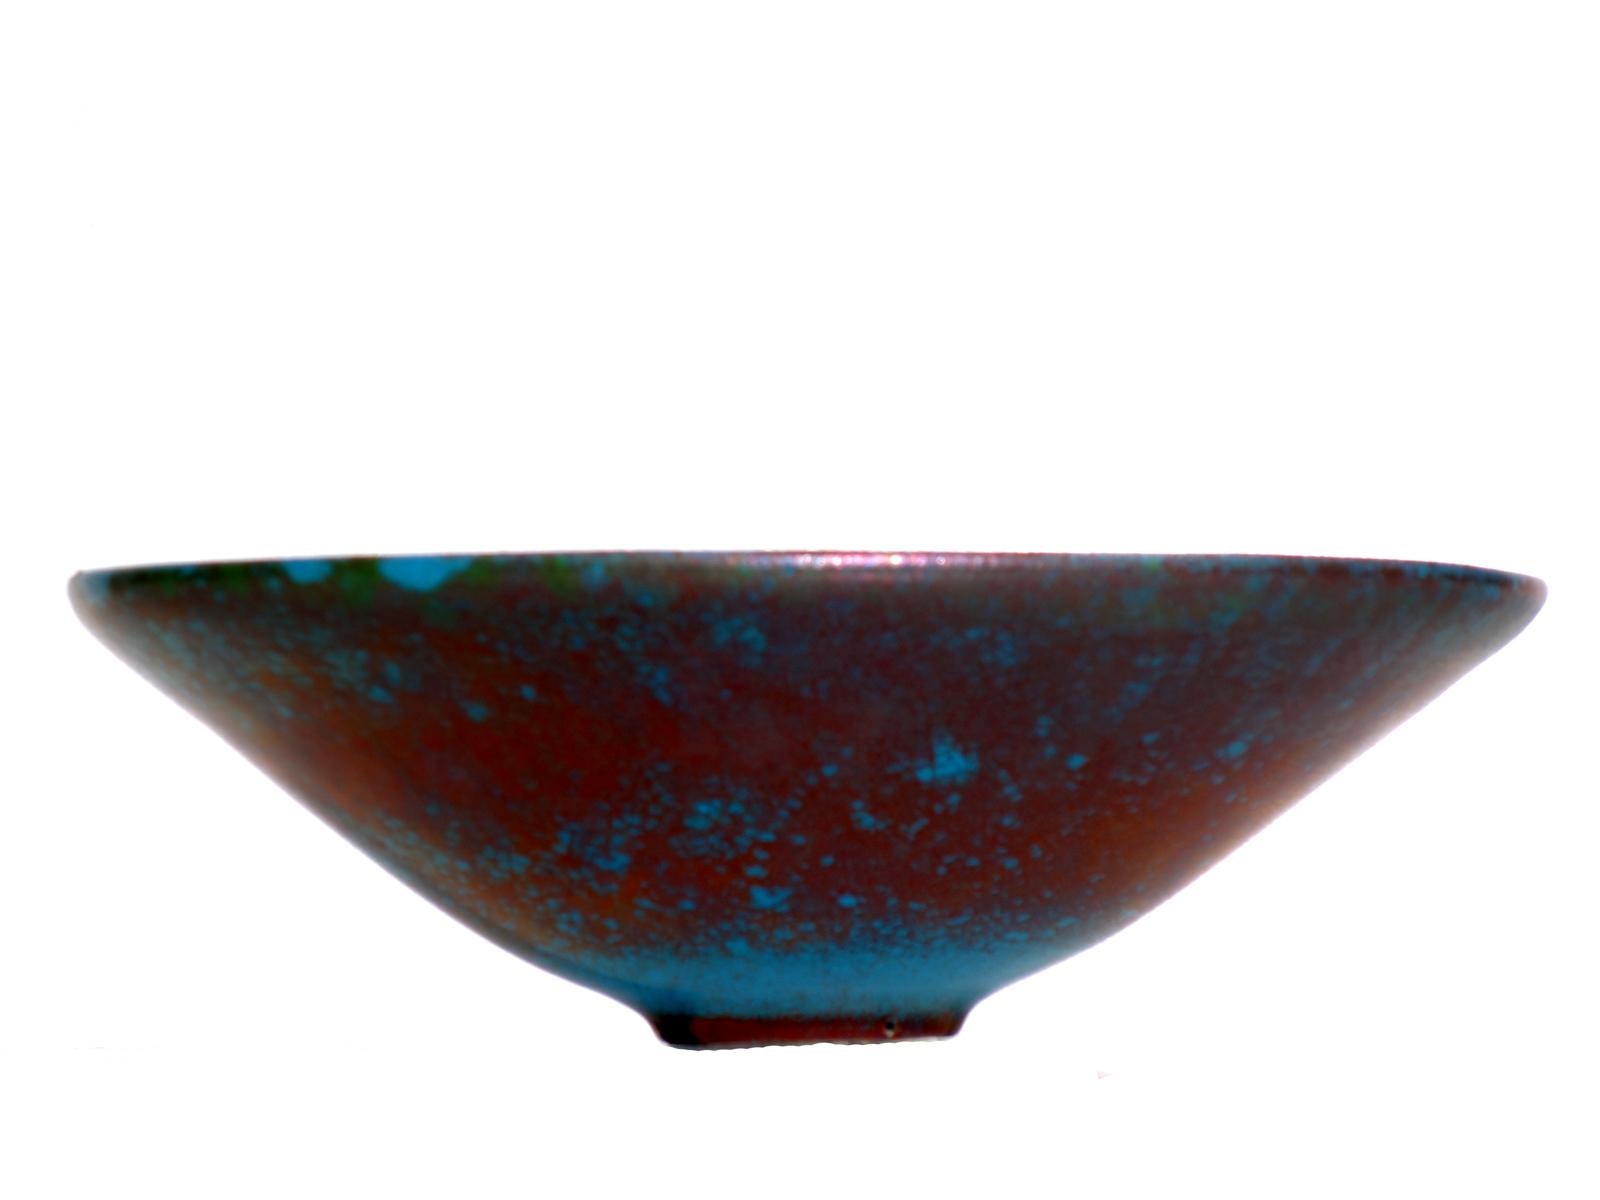 Carlo Zauli
Faenza, 1970

Ceramic Dish
Metallic enamels and in shades of blue

Artist's signature at the base
Perfette condizioni